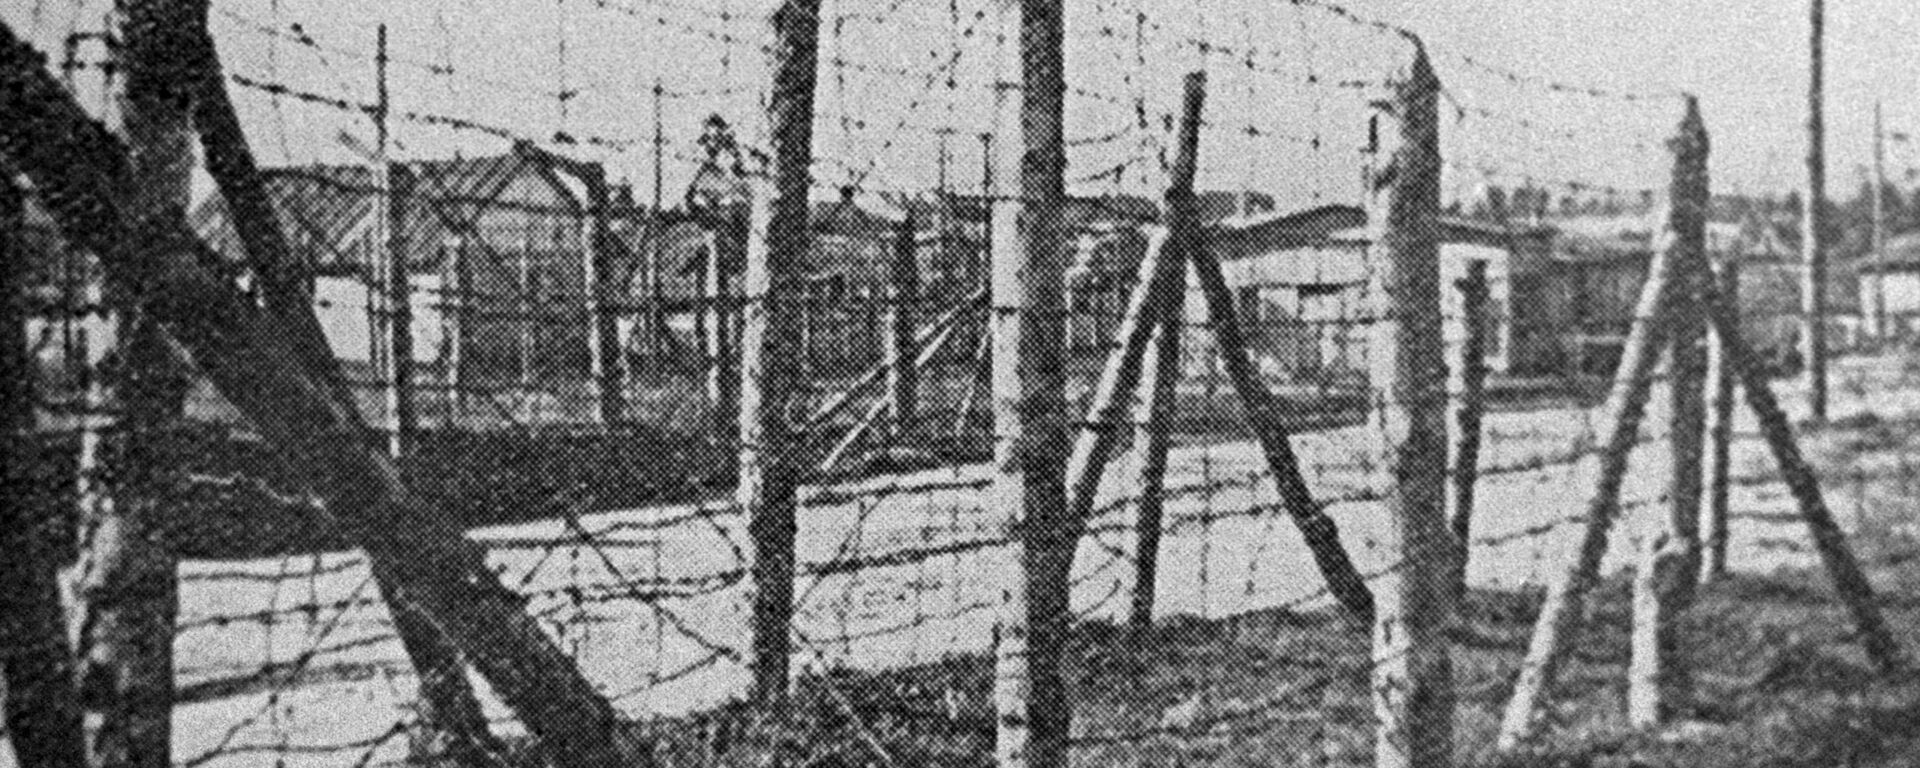 Un campo de concentración nazi - Sputnik Mundo, 1920, 20.02.2021